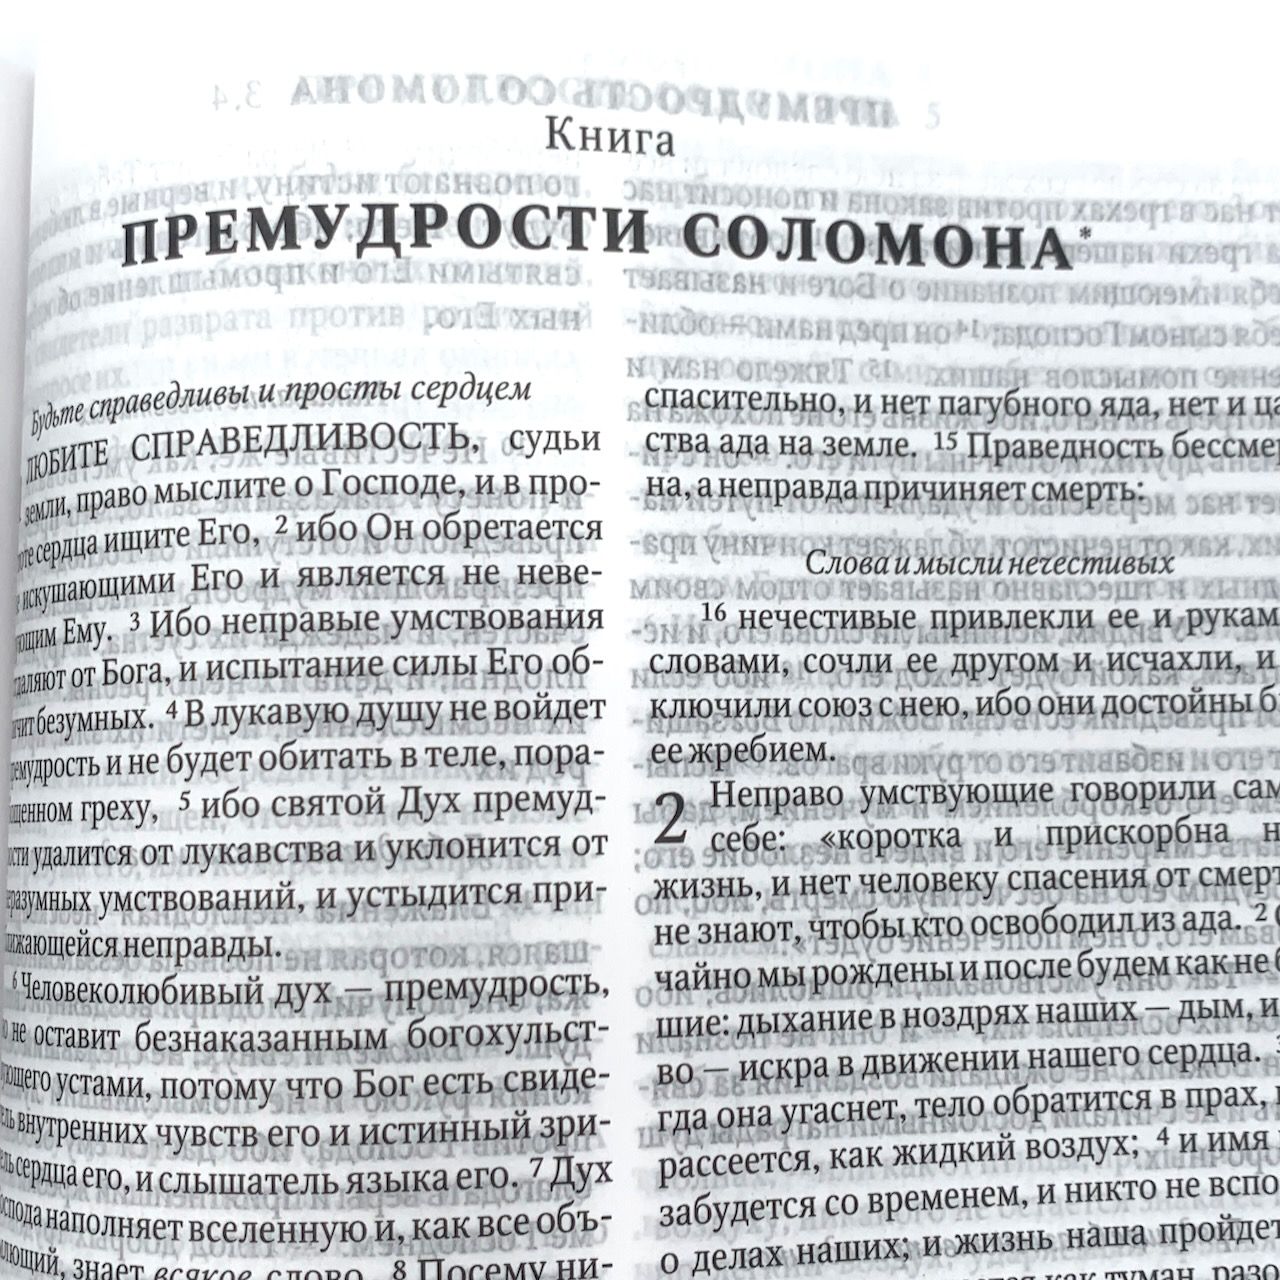 Библия 073 DC, код 1032 с неканоническими книгами, цвет темно-синий